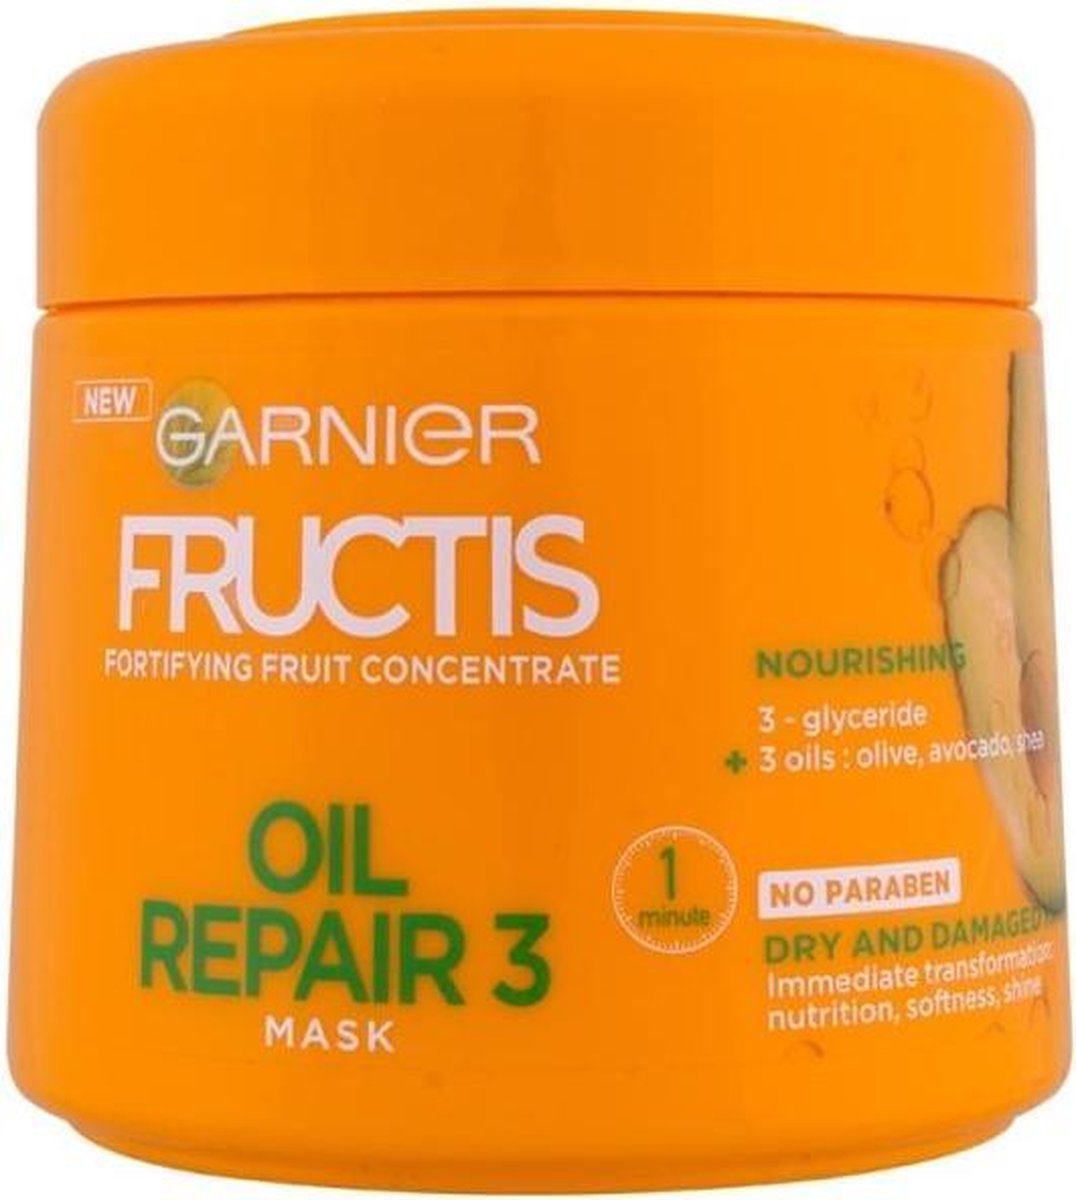 Garnier Fructis Oil repair 3